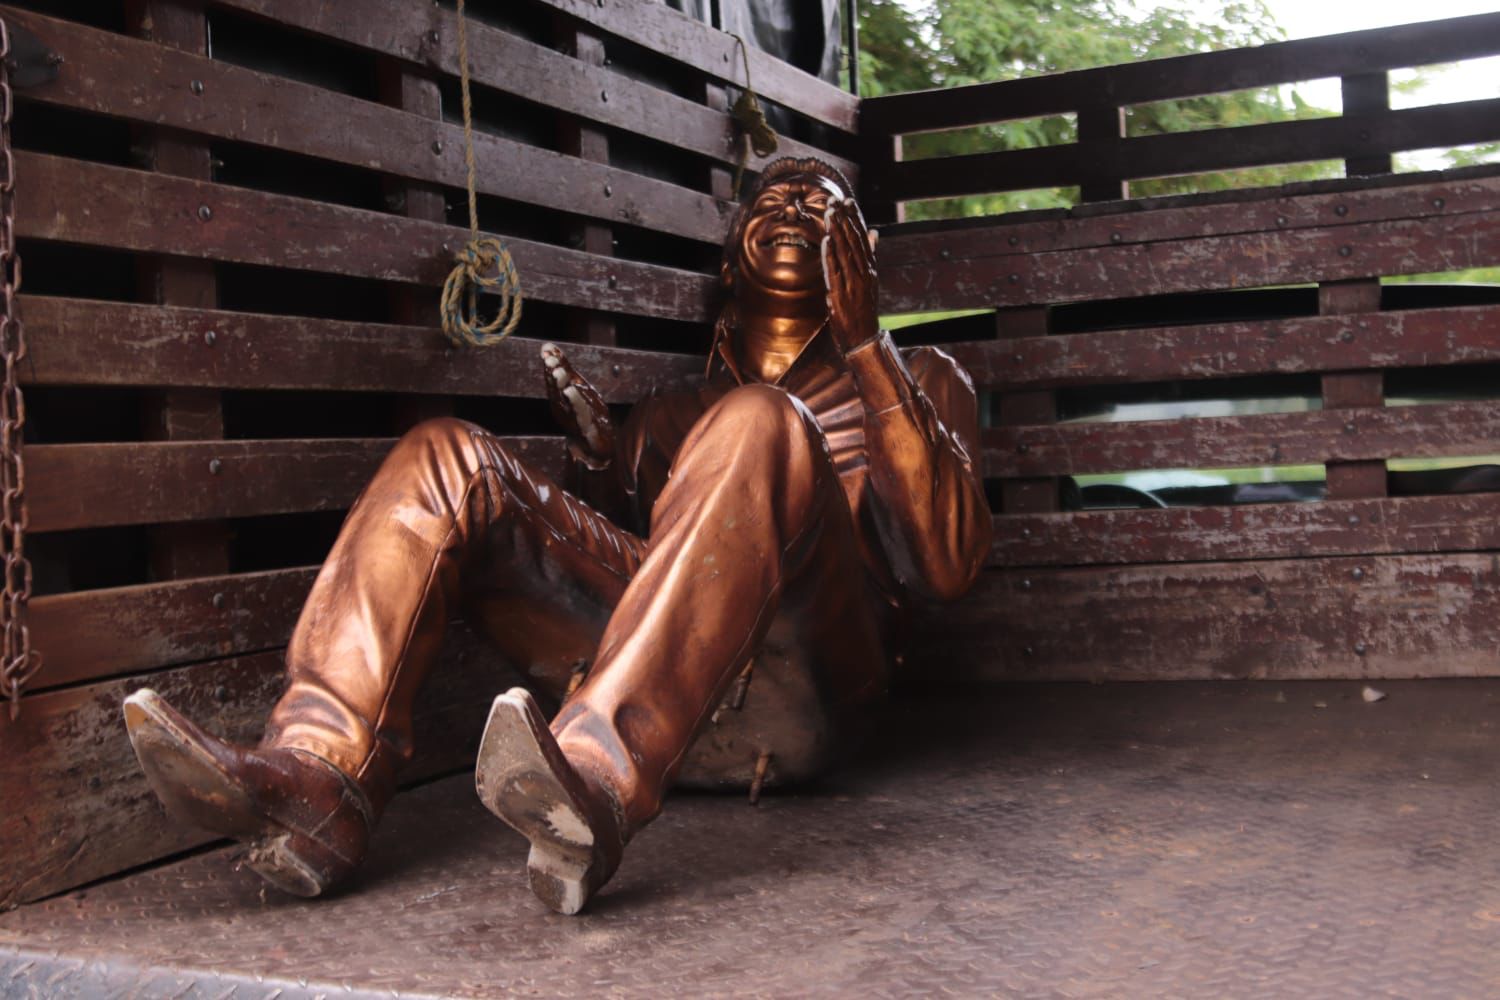 Esculturas de Valledupar fueron retiradas del parque La Provincia para restauración por deterioro y actos vandálicos